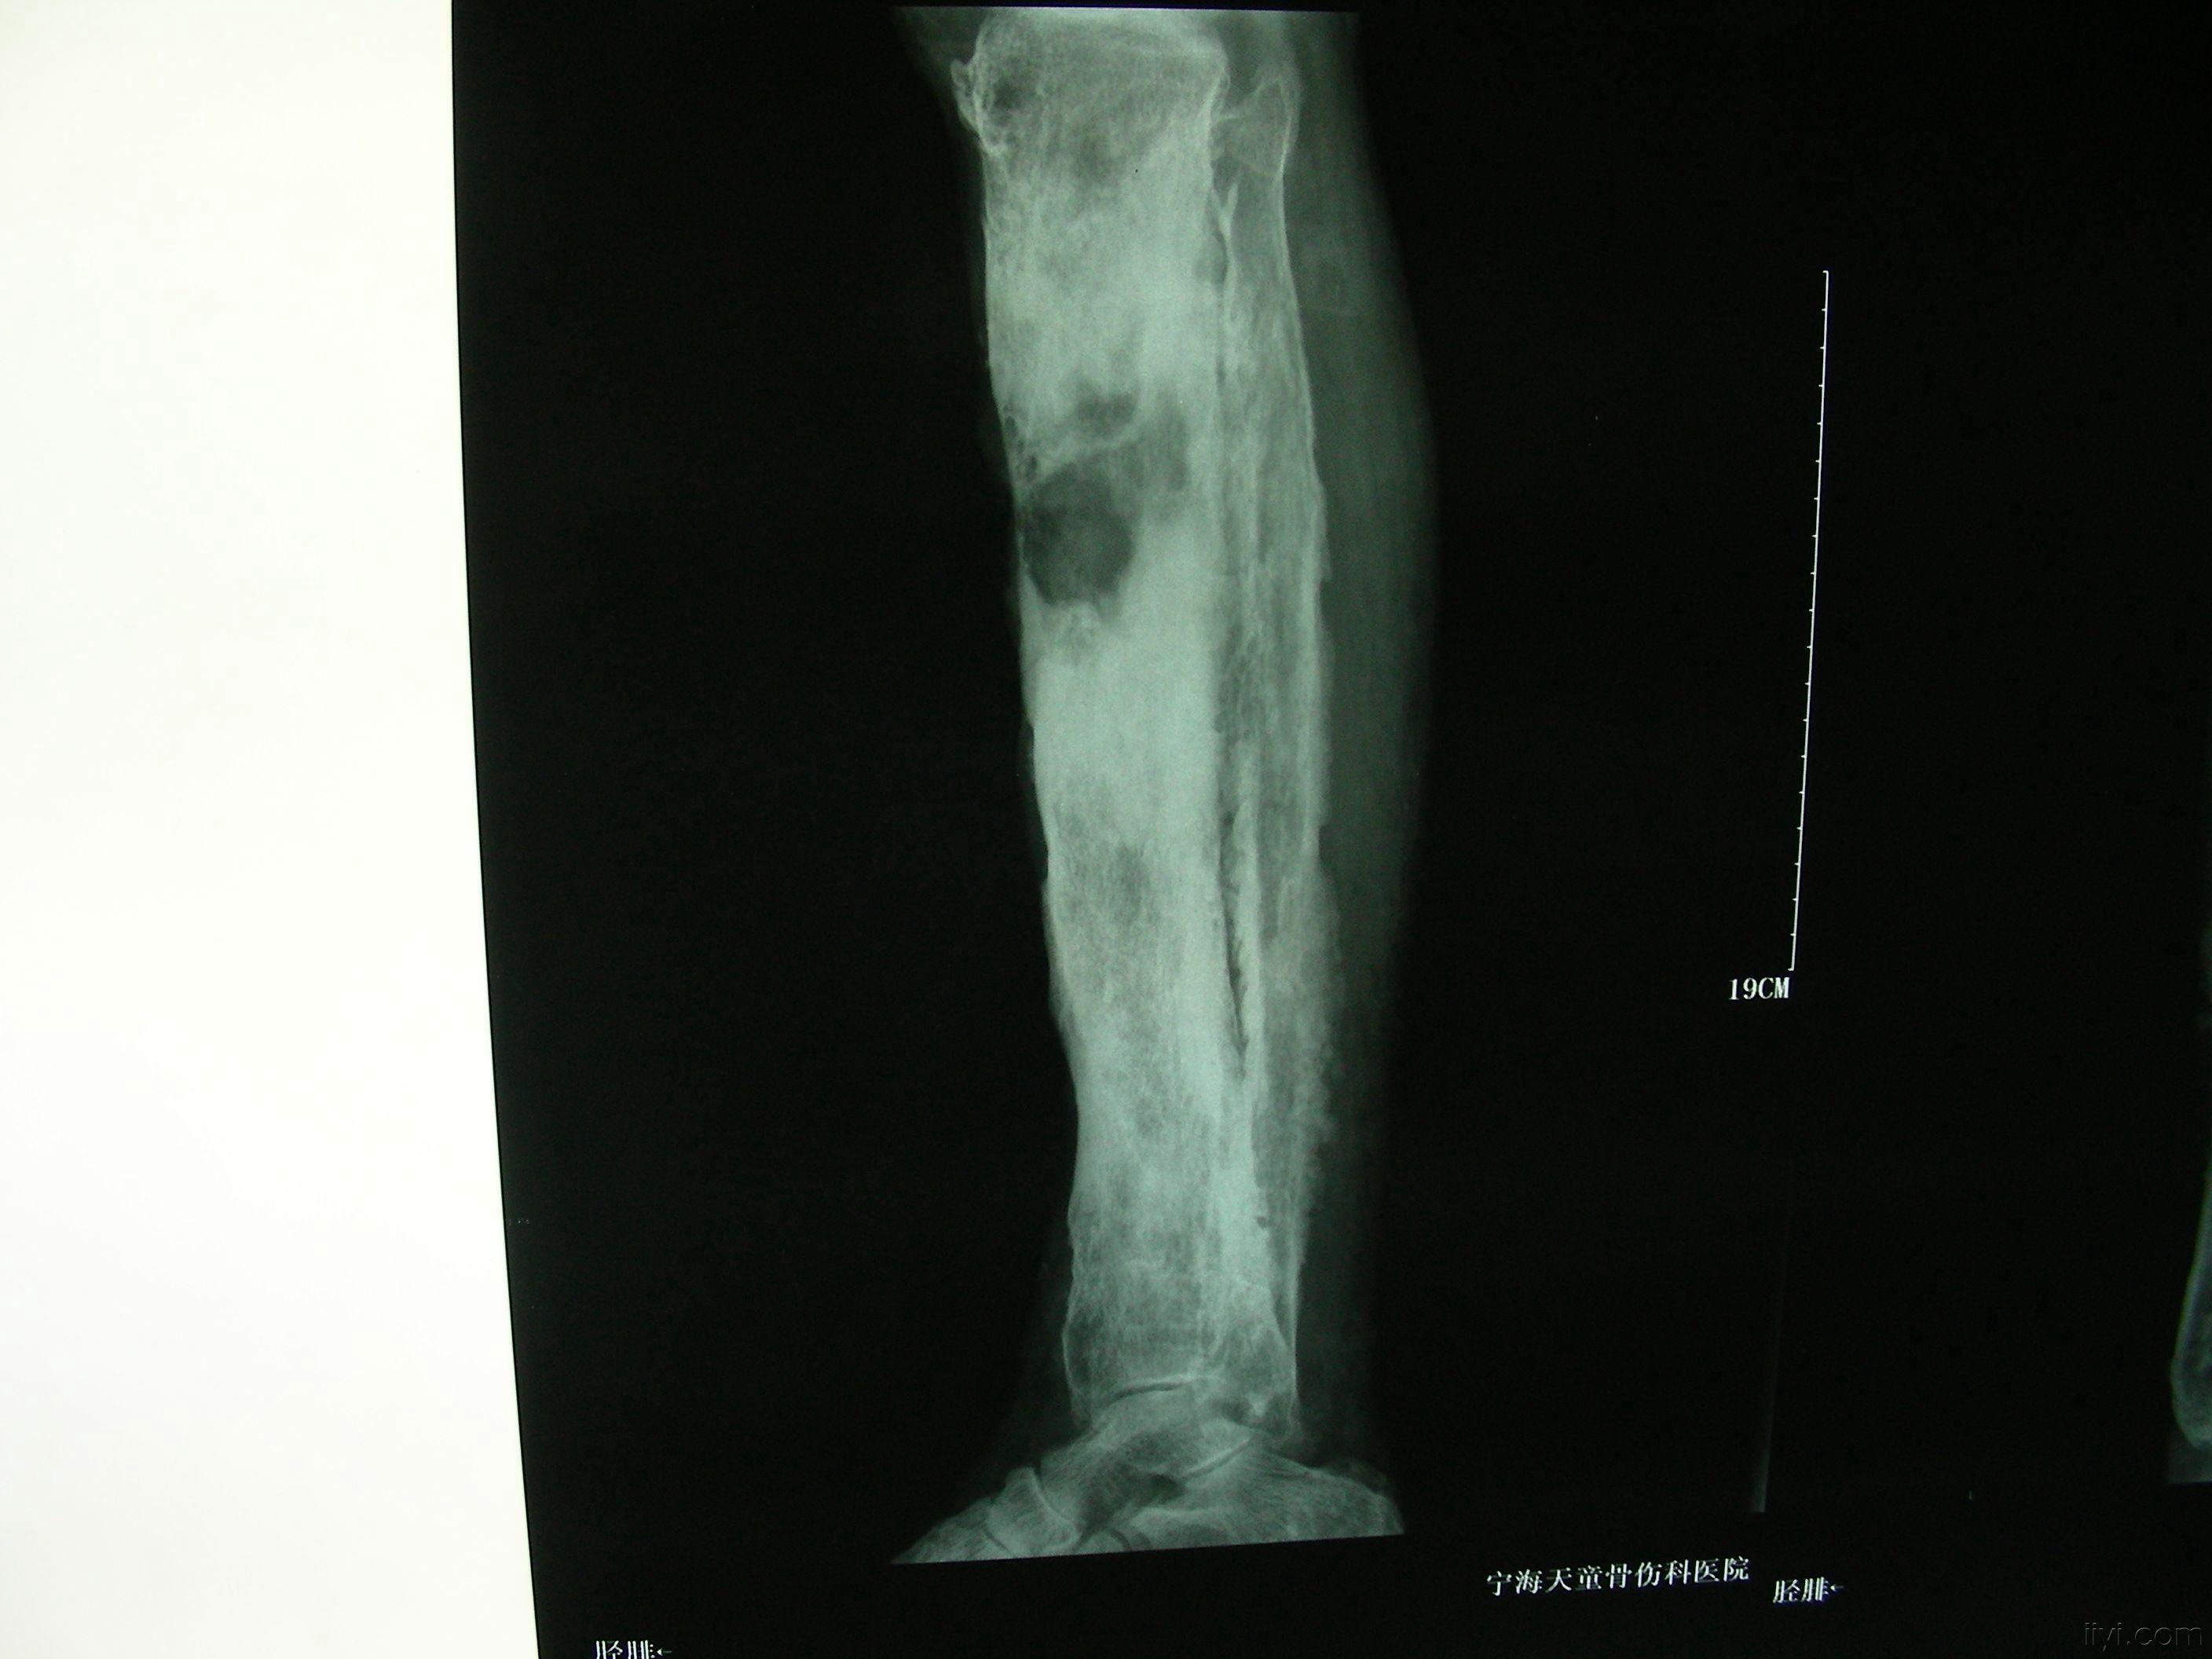 骨髓炎x线图片图片